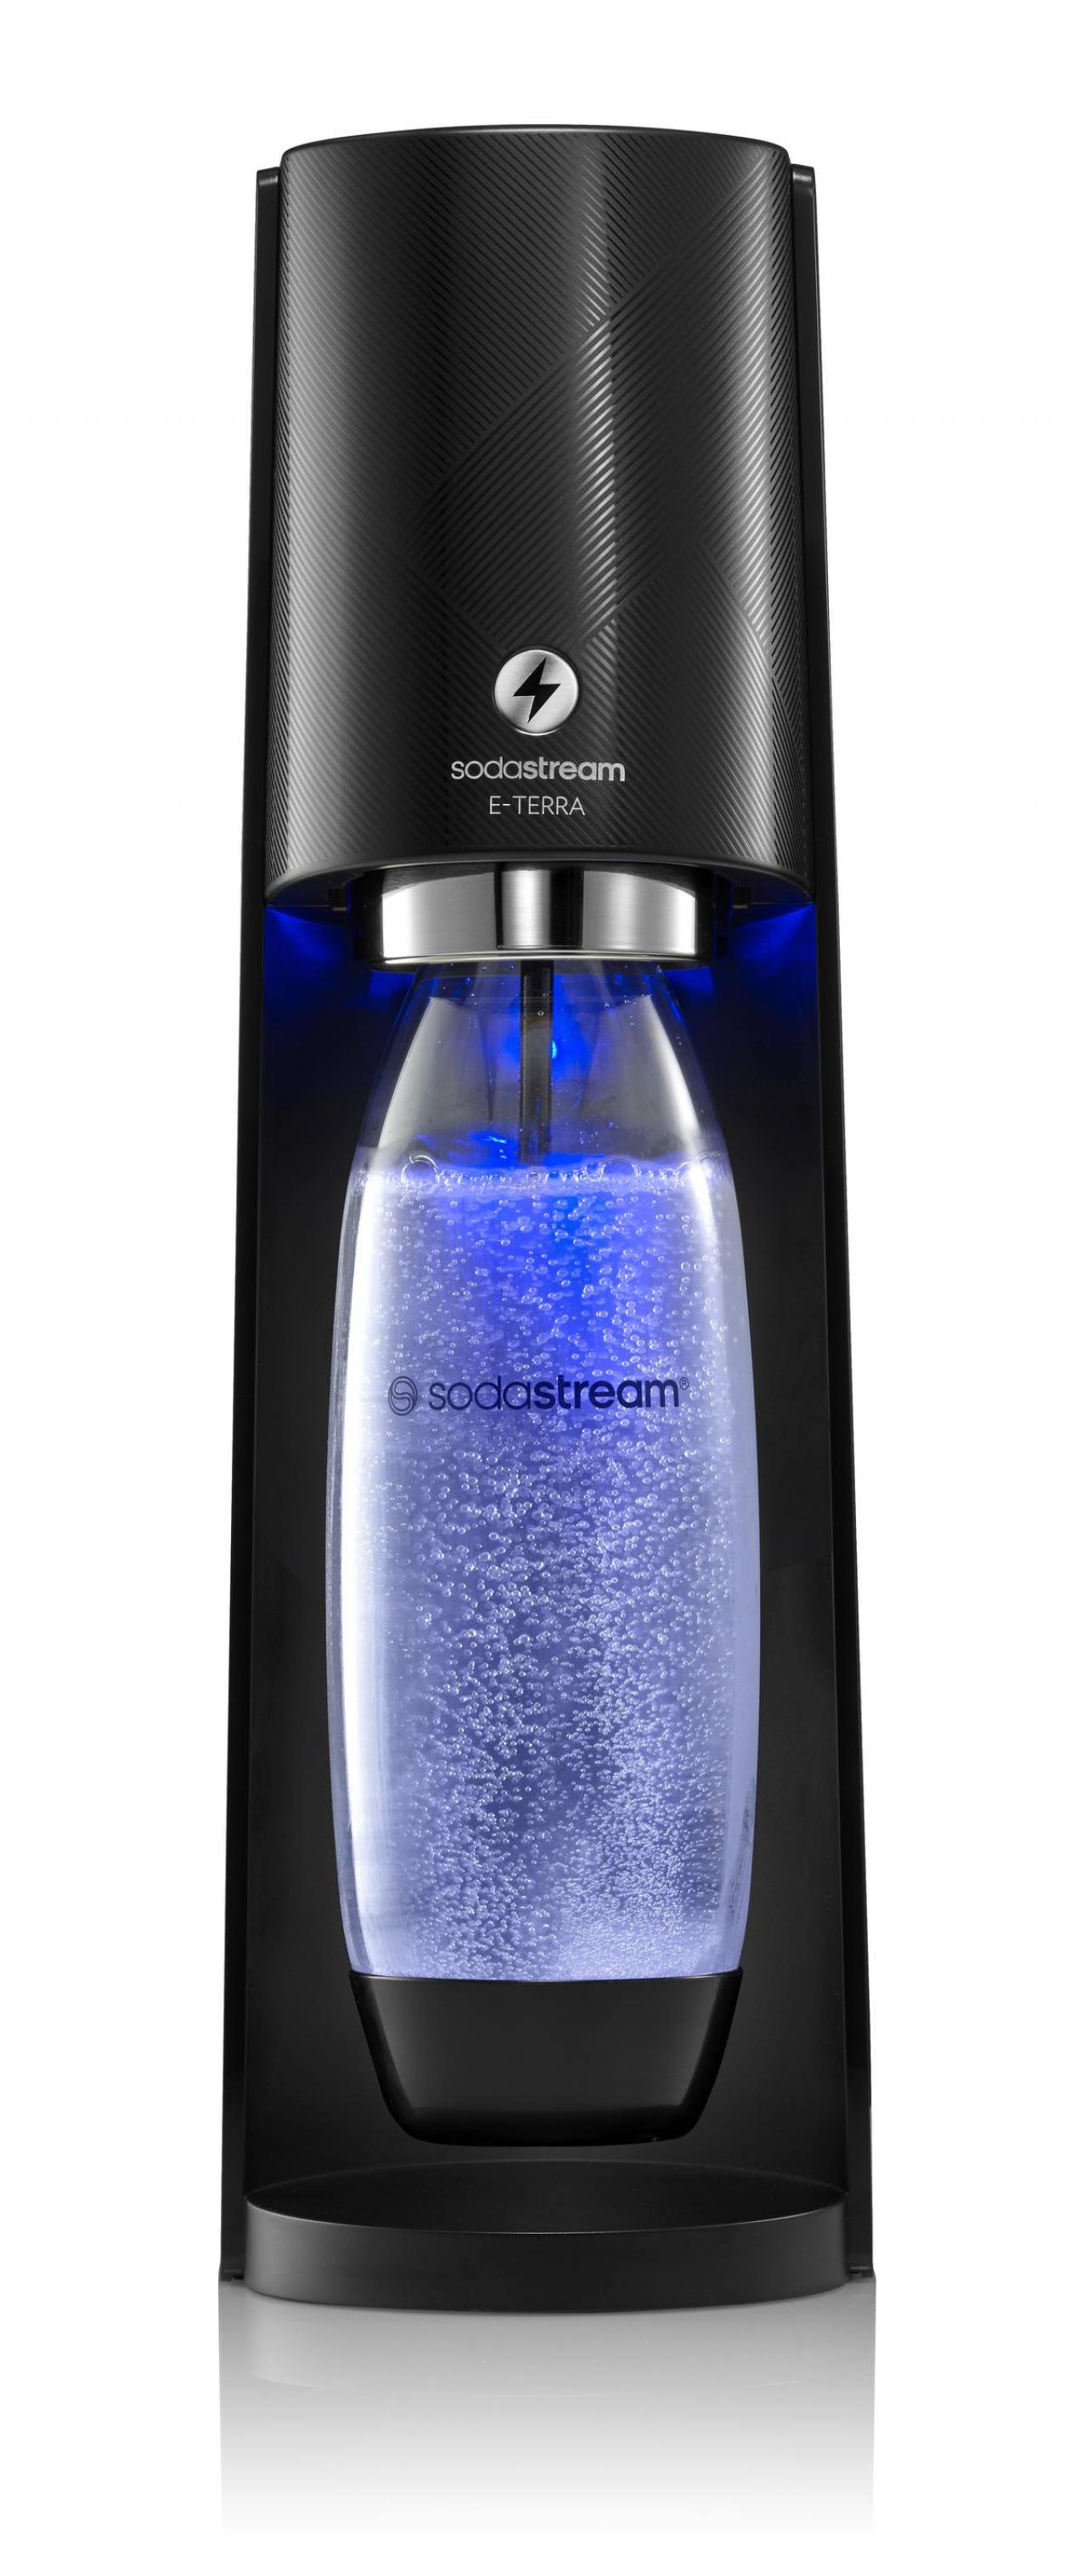 Weg plastic flessen: de geautomatiseerde E-Terra maakt in één klik bruiswater van kraantjeswater - € 139,99 voor de Starter Kit - SodaStream.